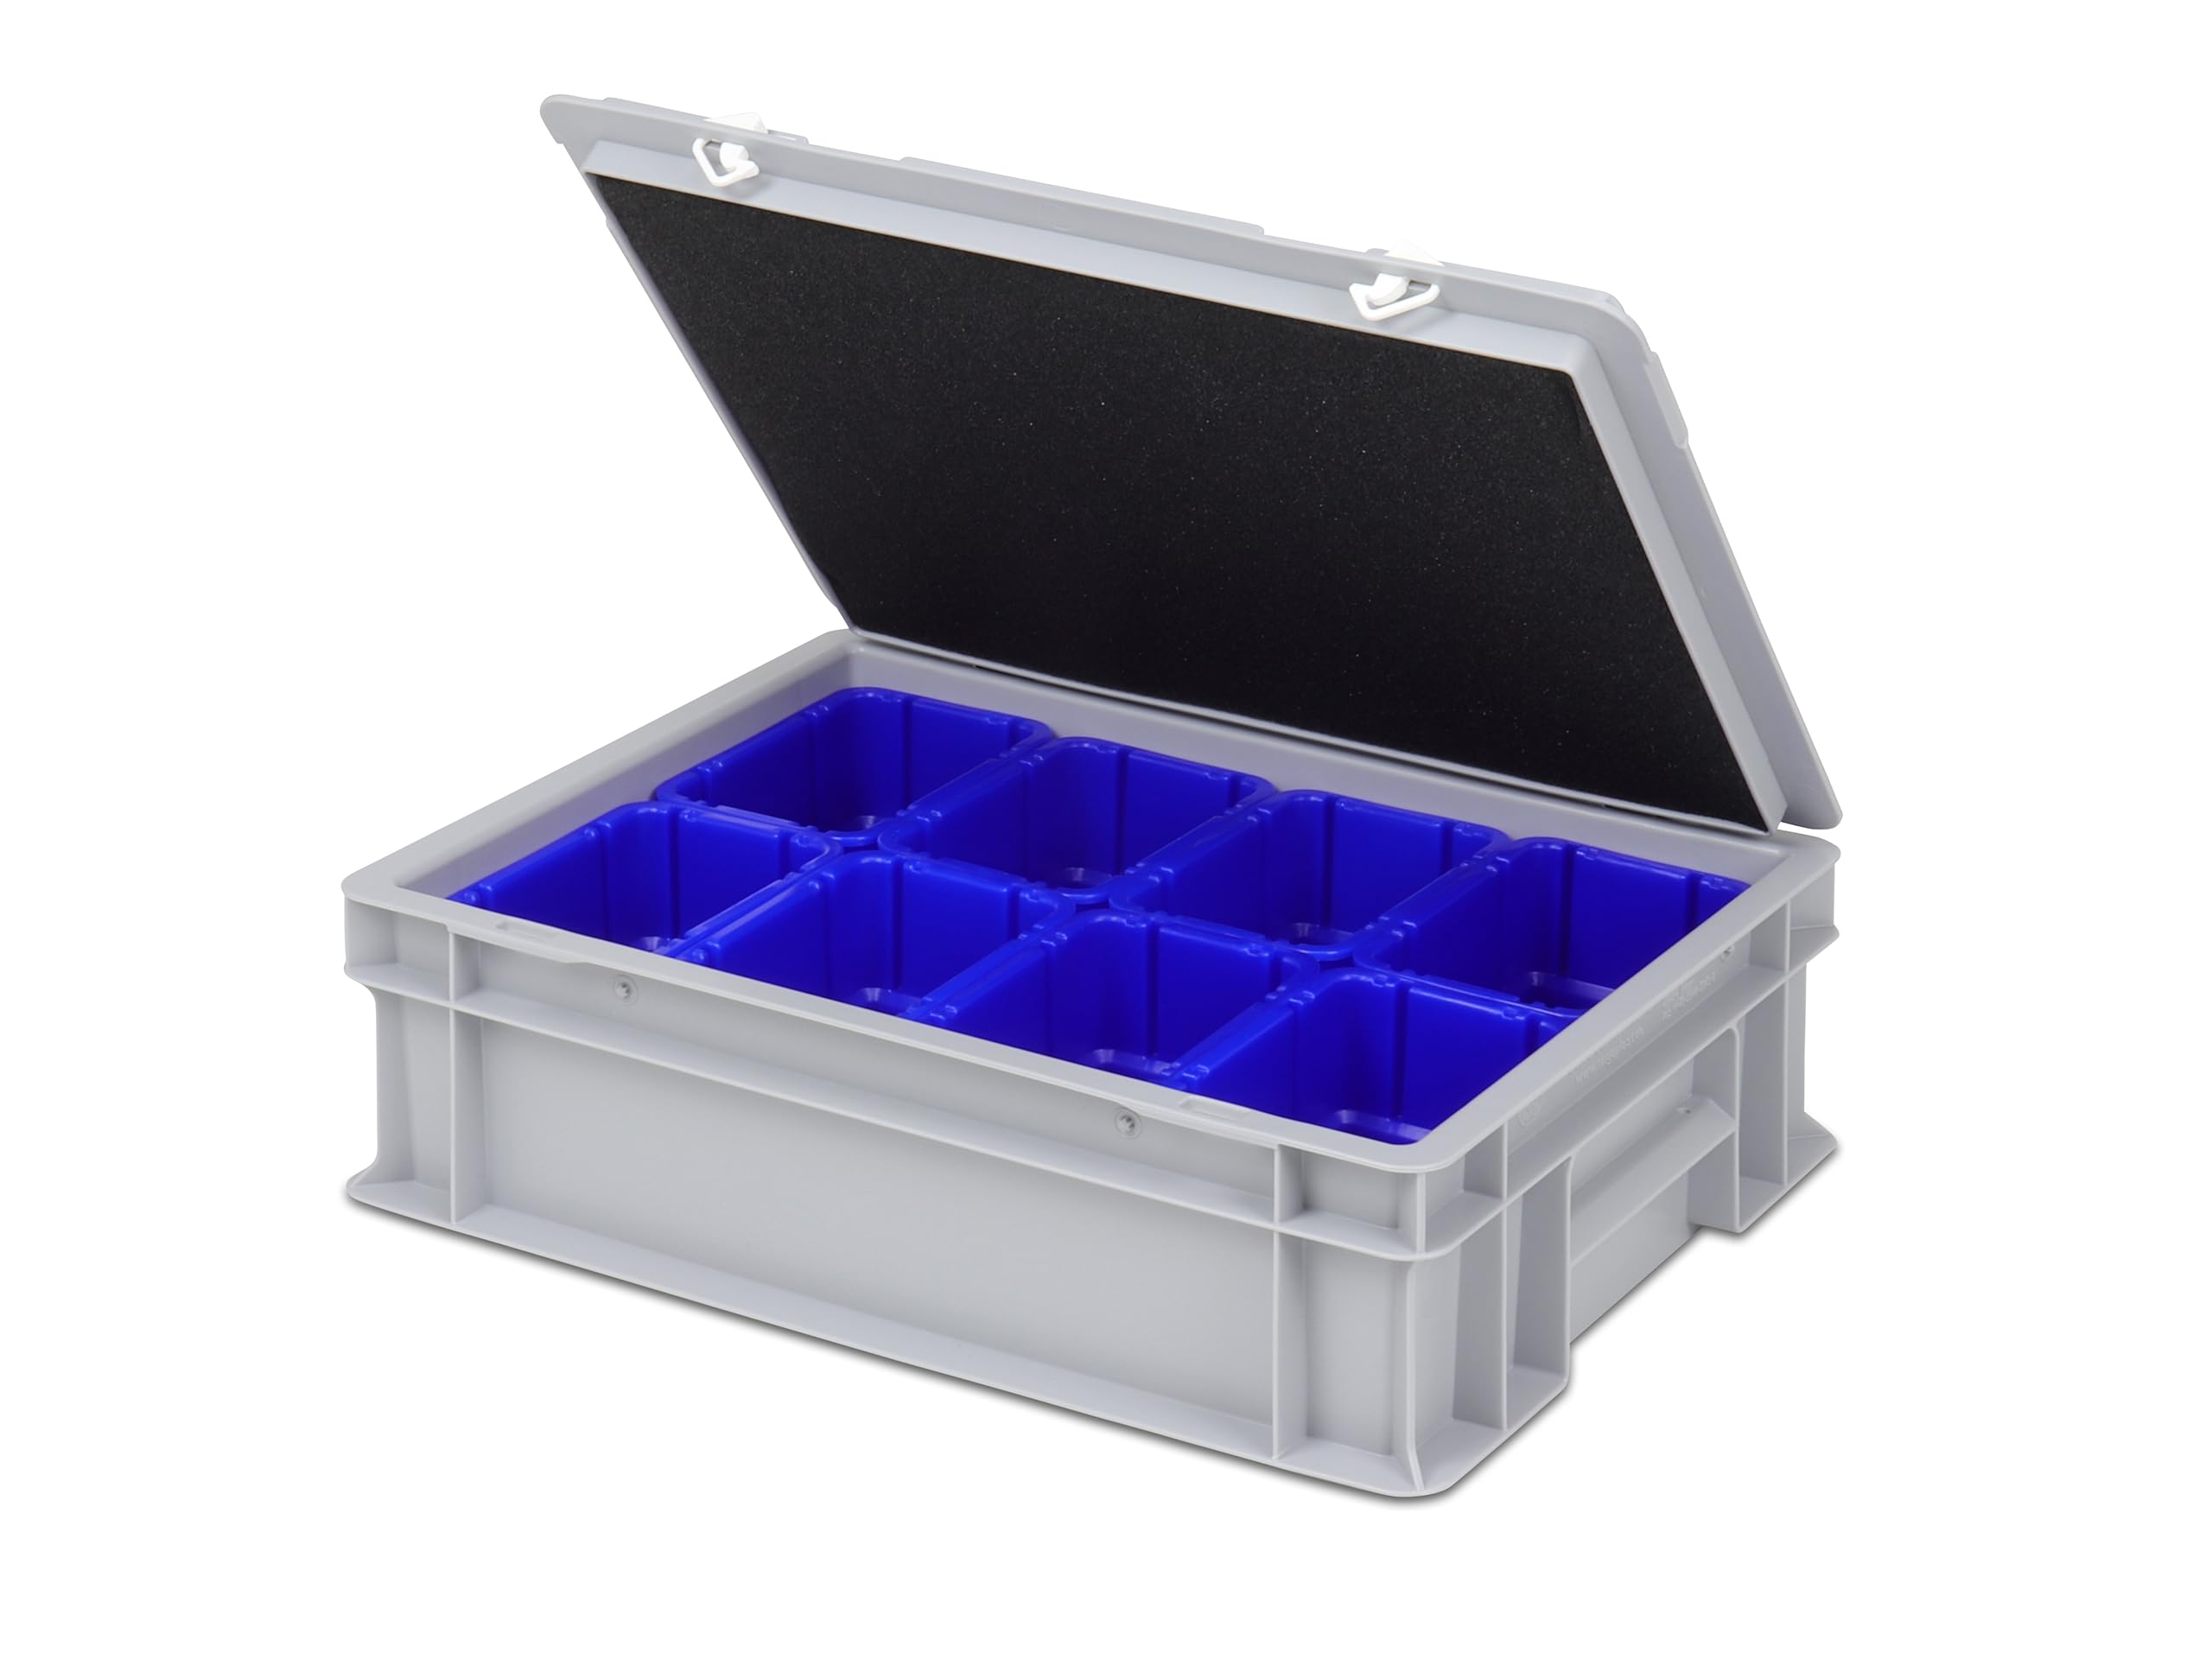 Einsatzkasten Einteilungs-Set für Eurobehälter, Schubladen mit Innenmaß 362x262 mm (LxB), 102 mm hoch, verschiedene Größen/Farben (8er Set inkl. Box + Deckel, blau)